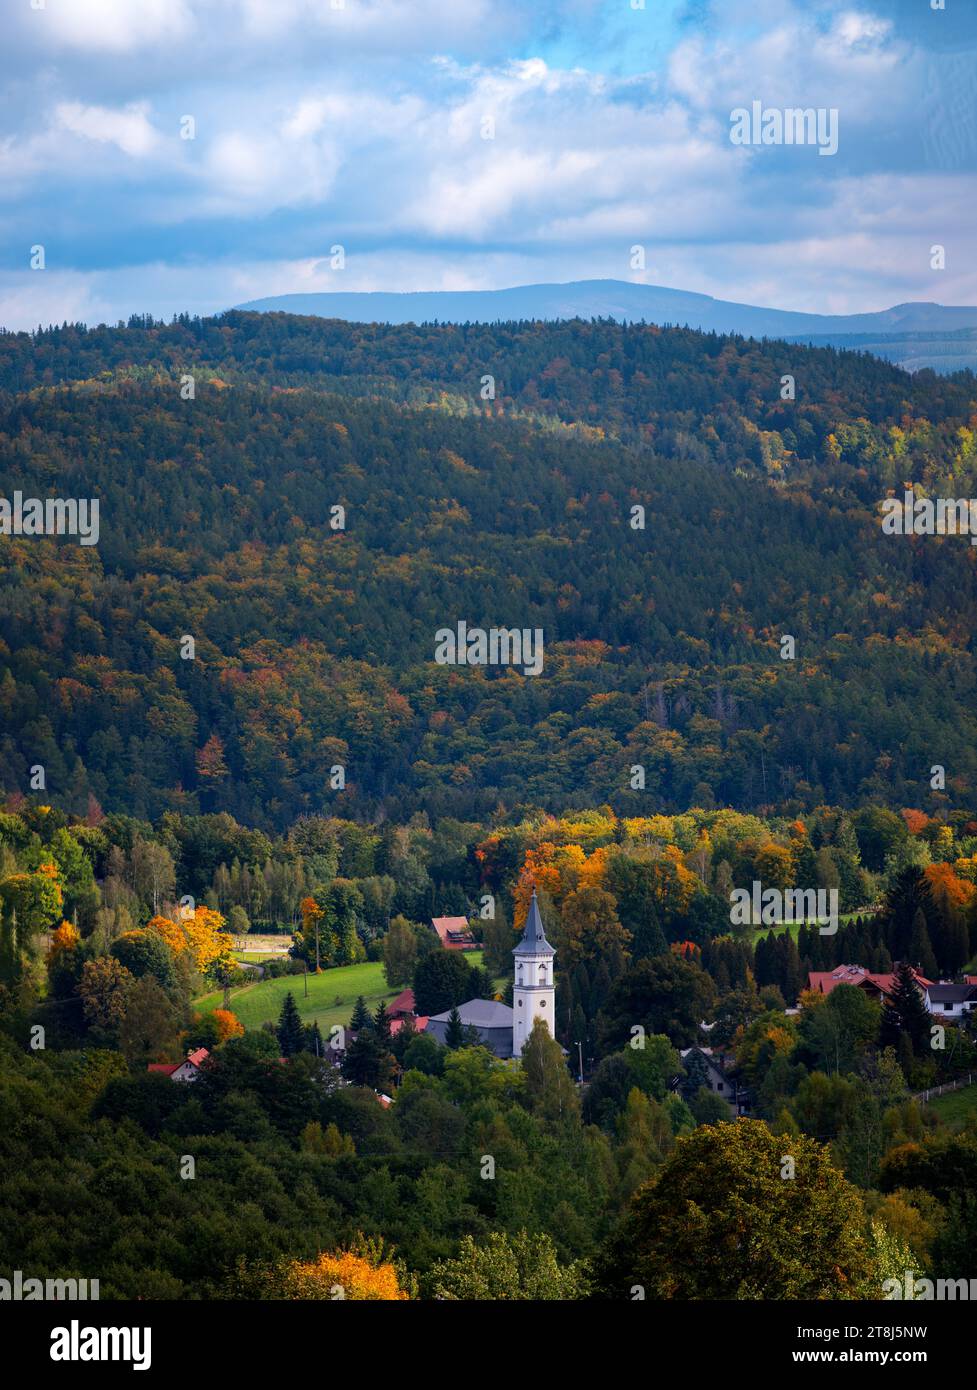 24 09 2022: view of town in Karkonosze mountains Szklarska Poreba, Poland Stock Photo